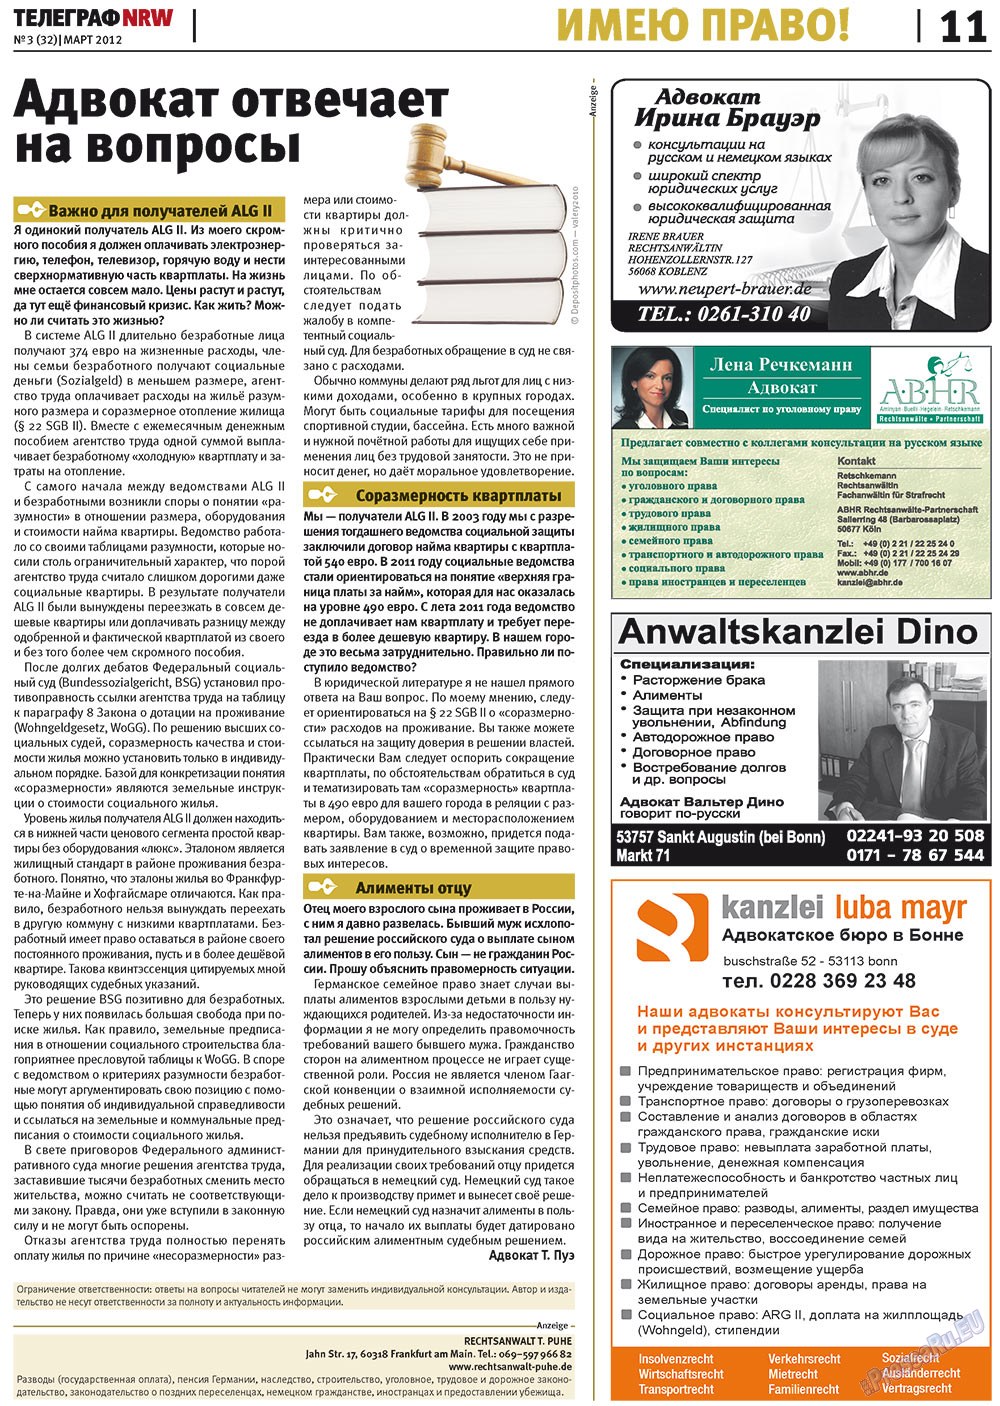 Телеграф NRW (газета). 2012 год, номер 3, стр. 11